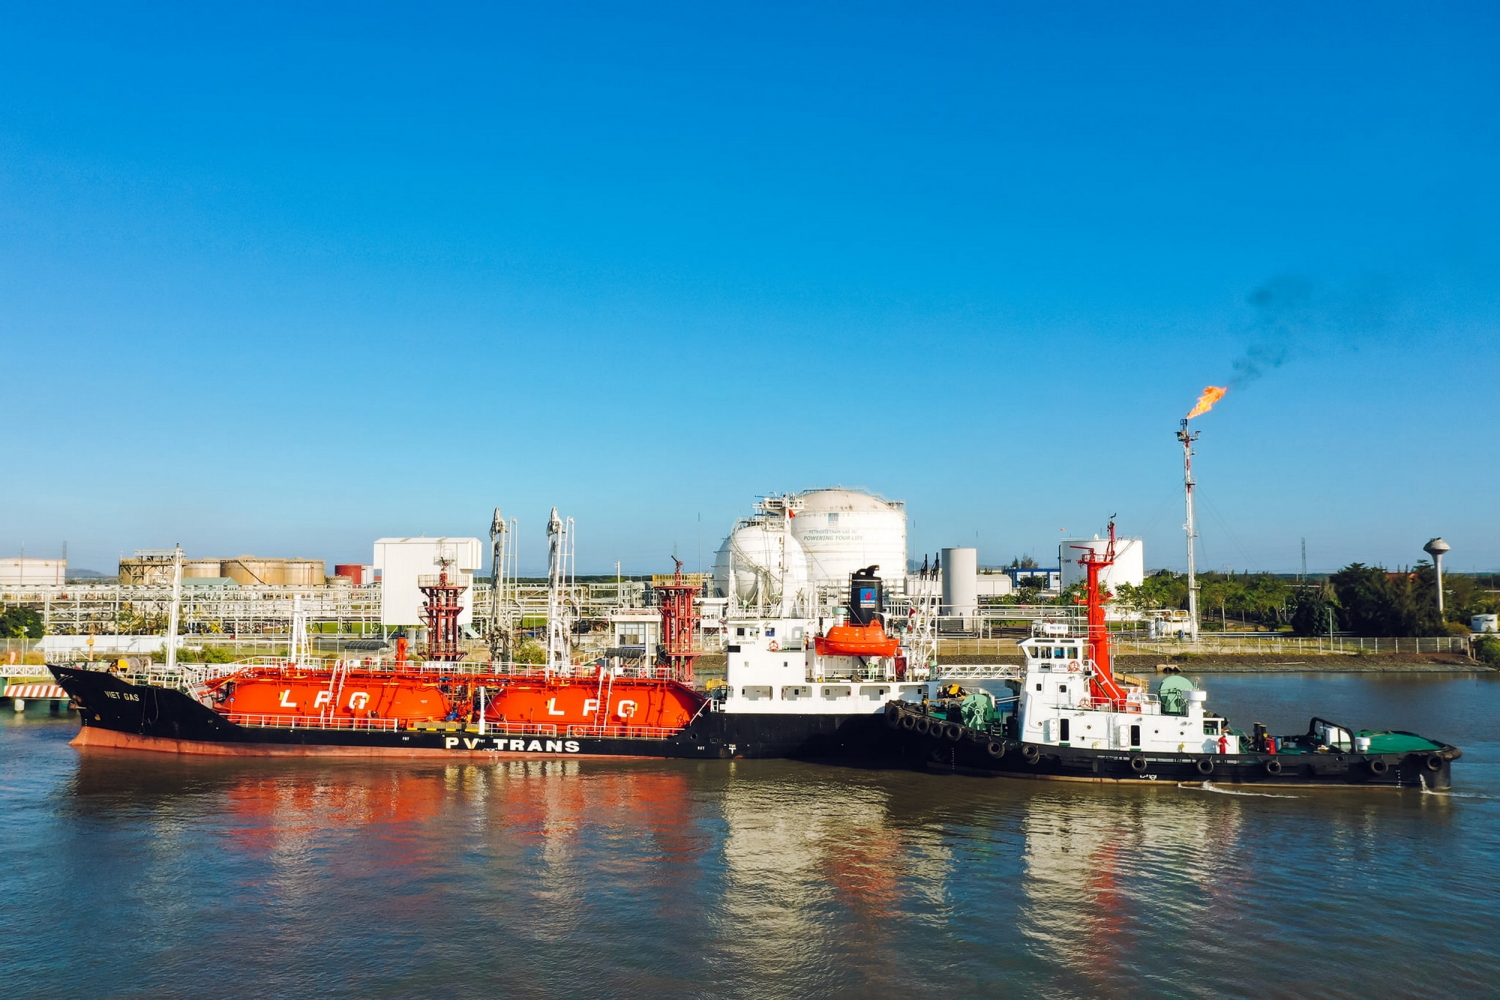 Kho cảng PV GAS Vũng Tàu (Kho cảng Thị Vải) sẽ bổ sung nhiều chức năng mới, diện mạo mới khi Dự án LNG hoàn thành và đi vào hoạt động